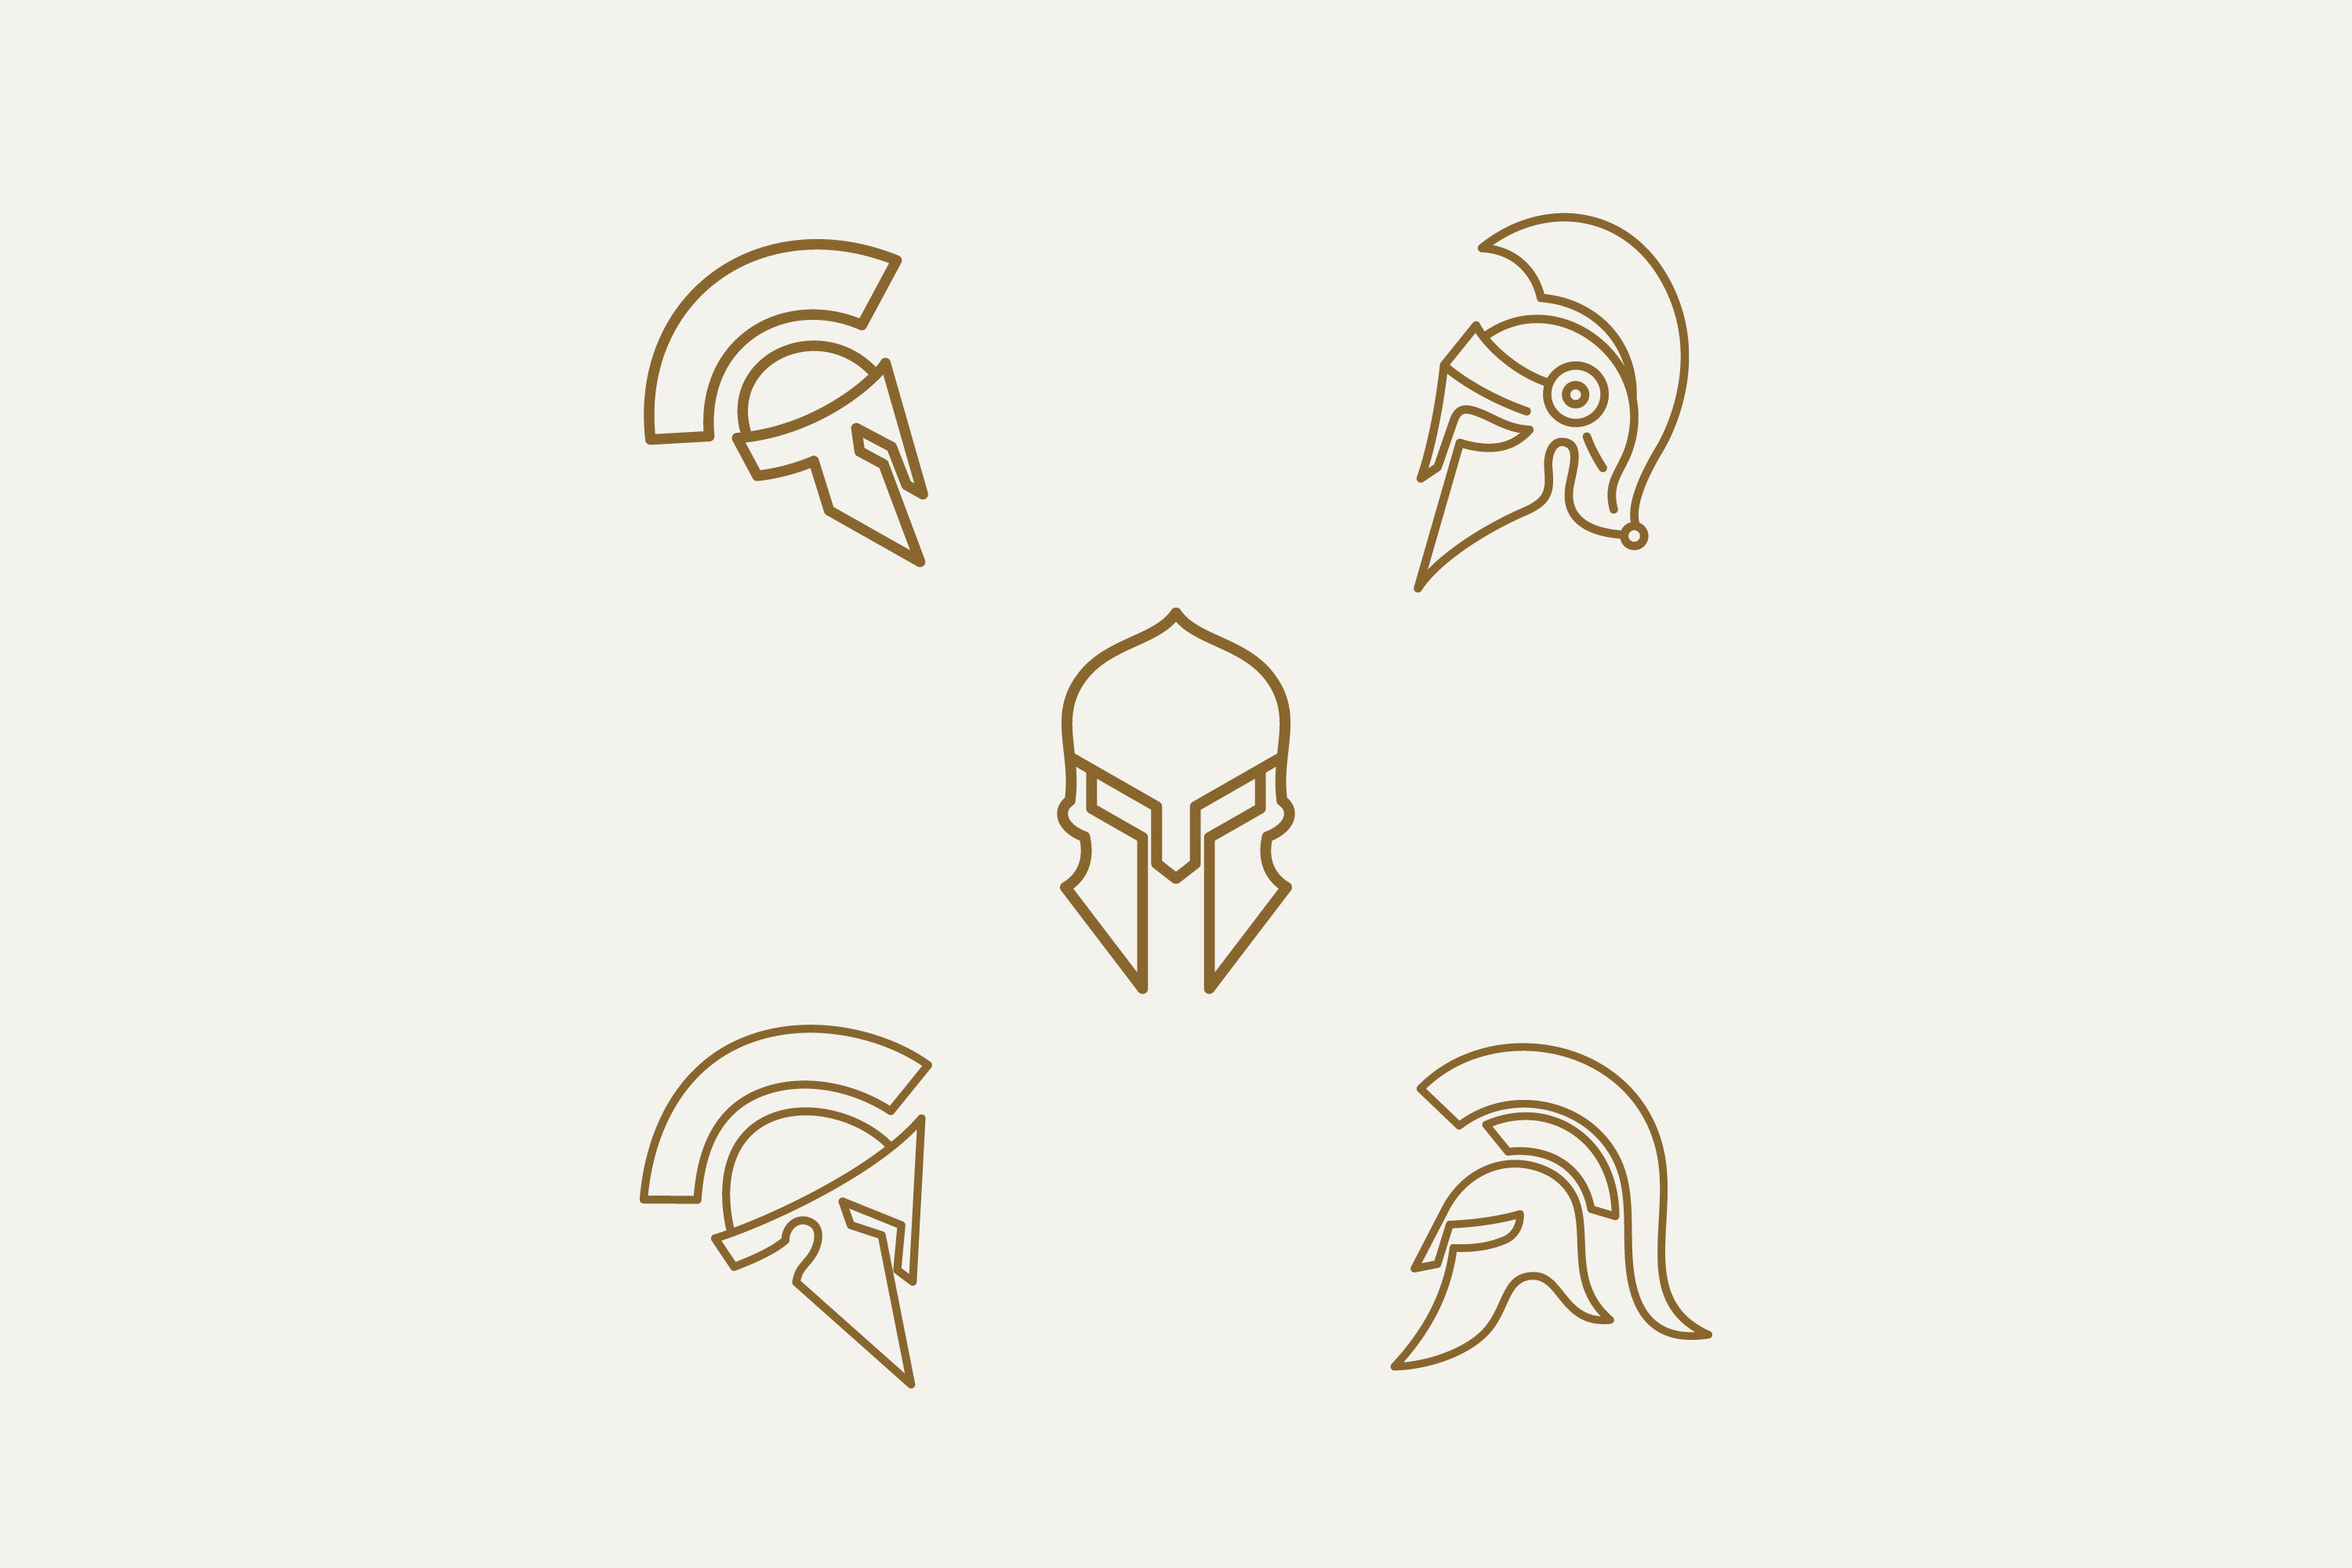 spartan warrior designs